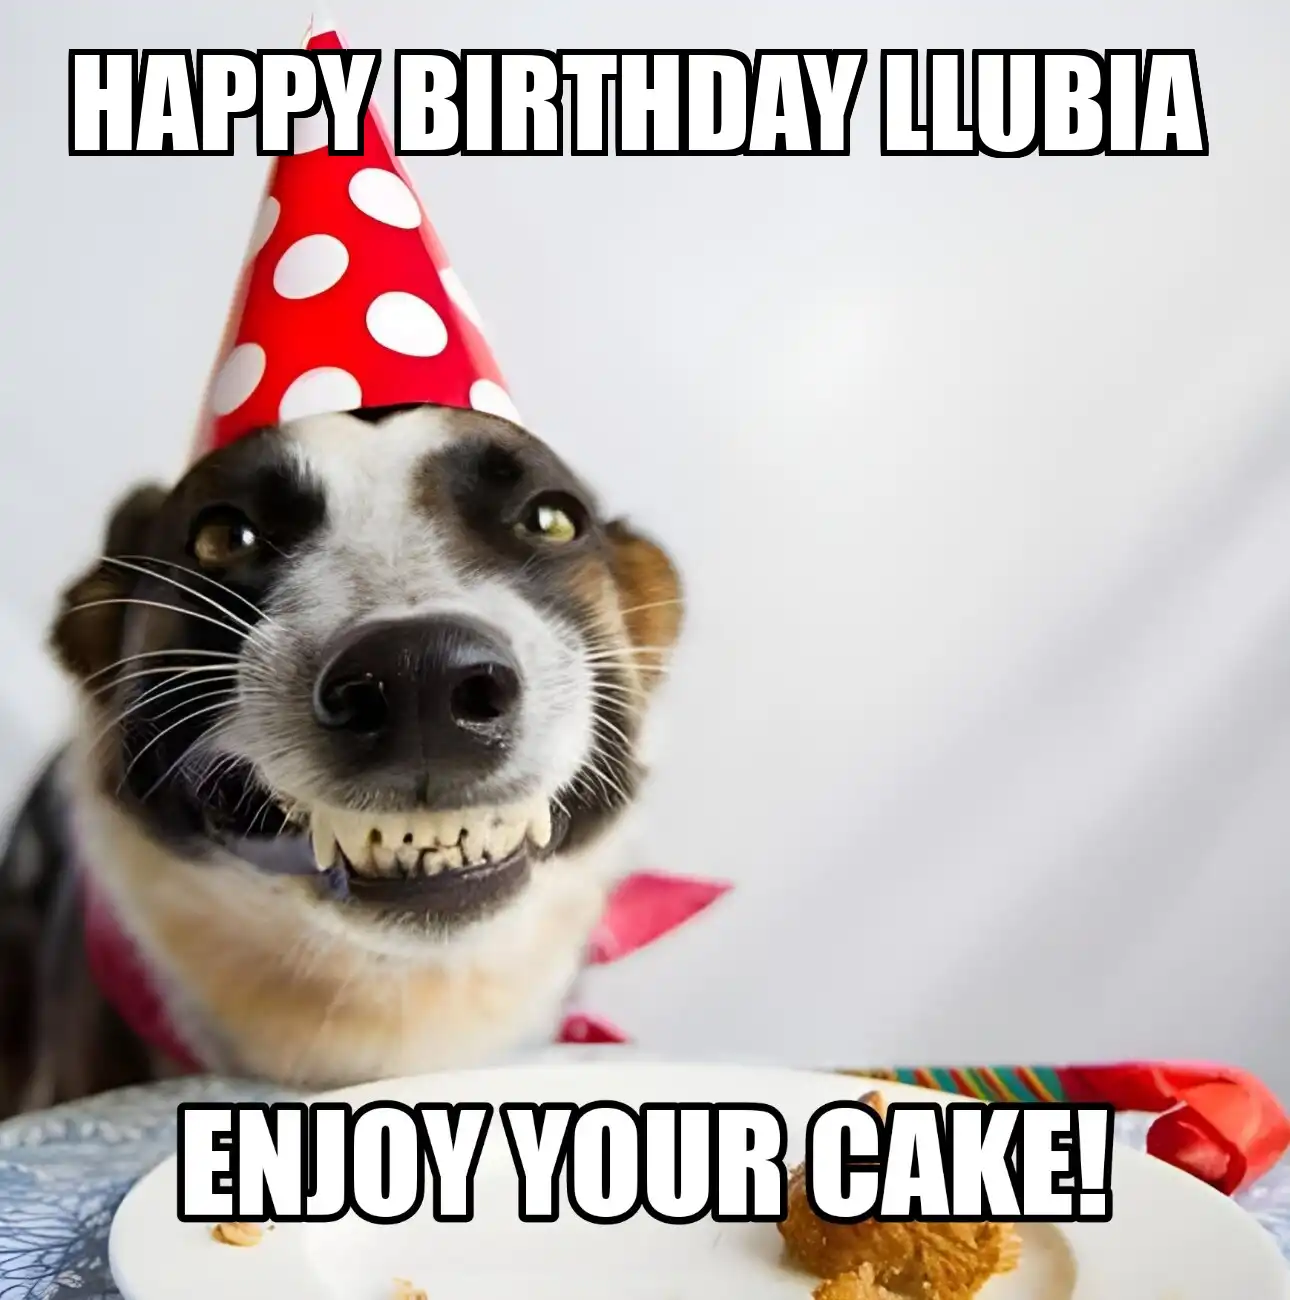 Happy Birthday Llubia Enjoy Your Cake Dog Meme